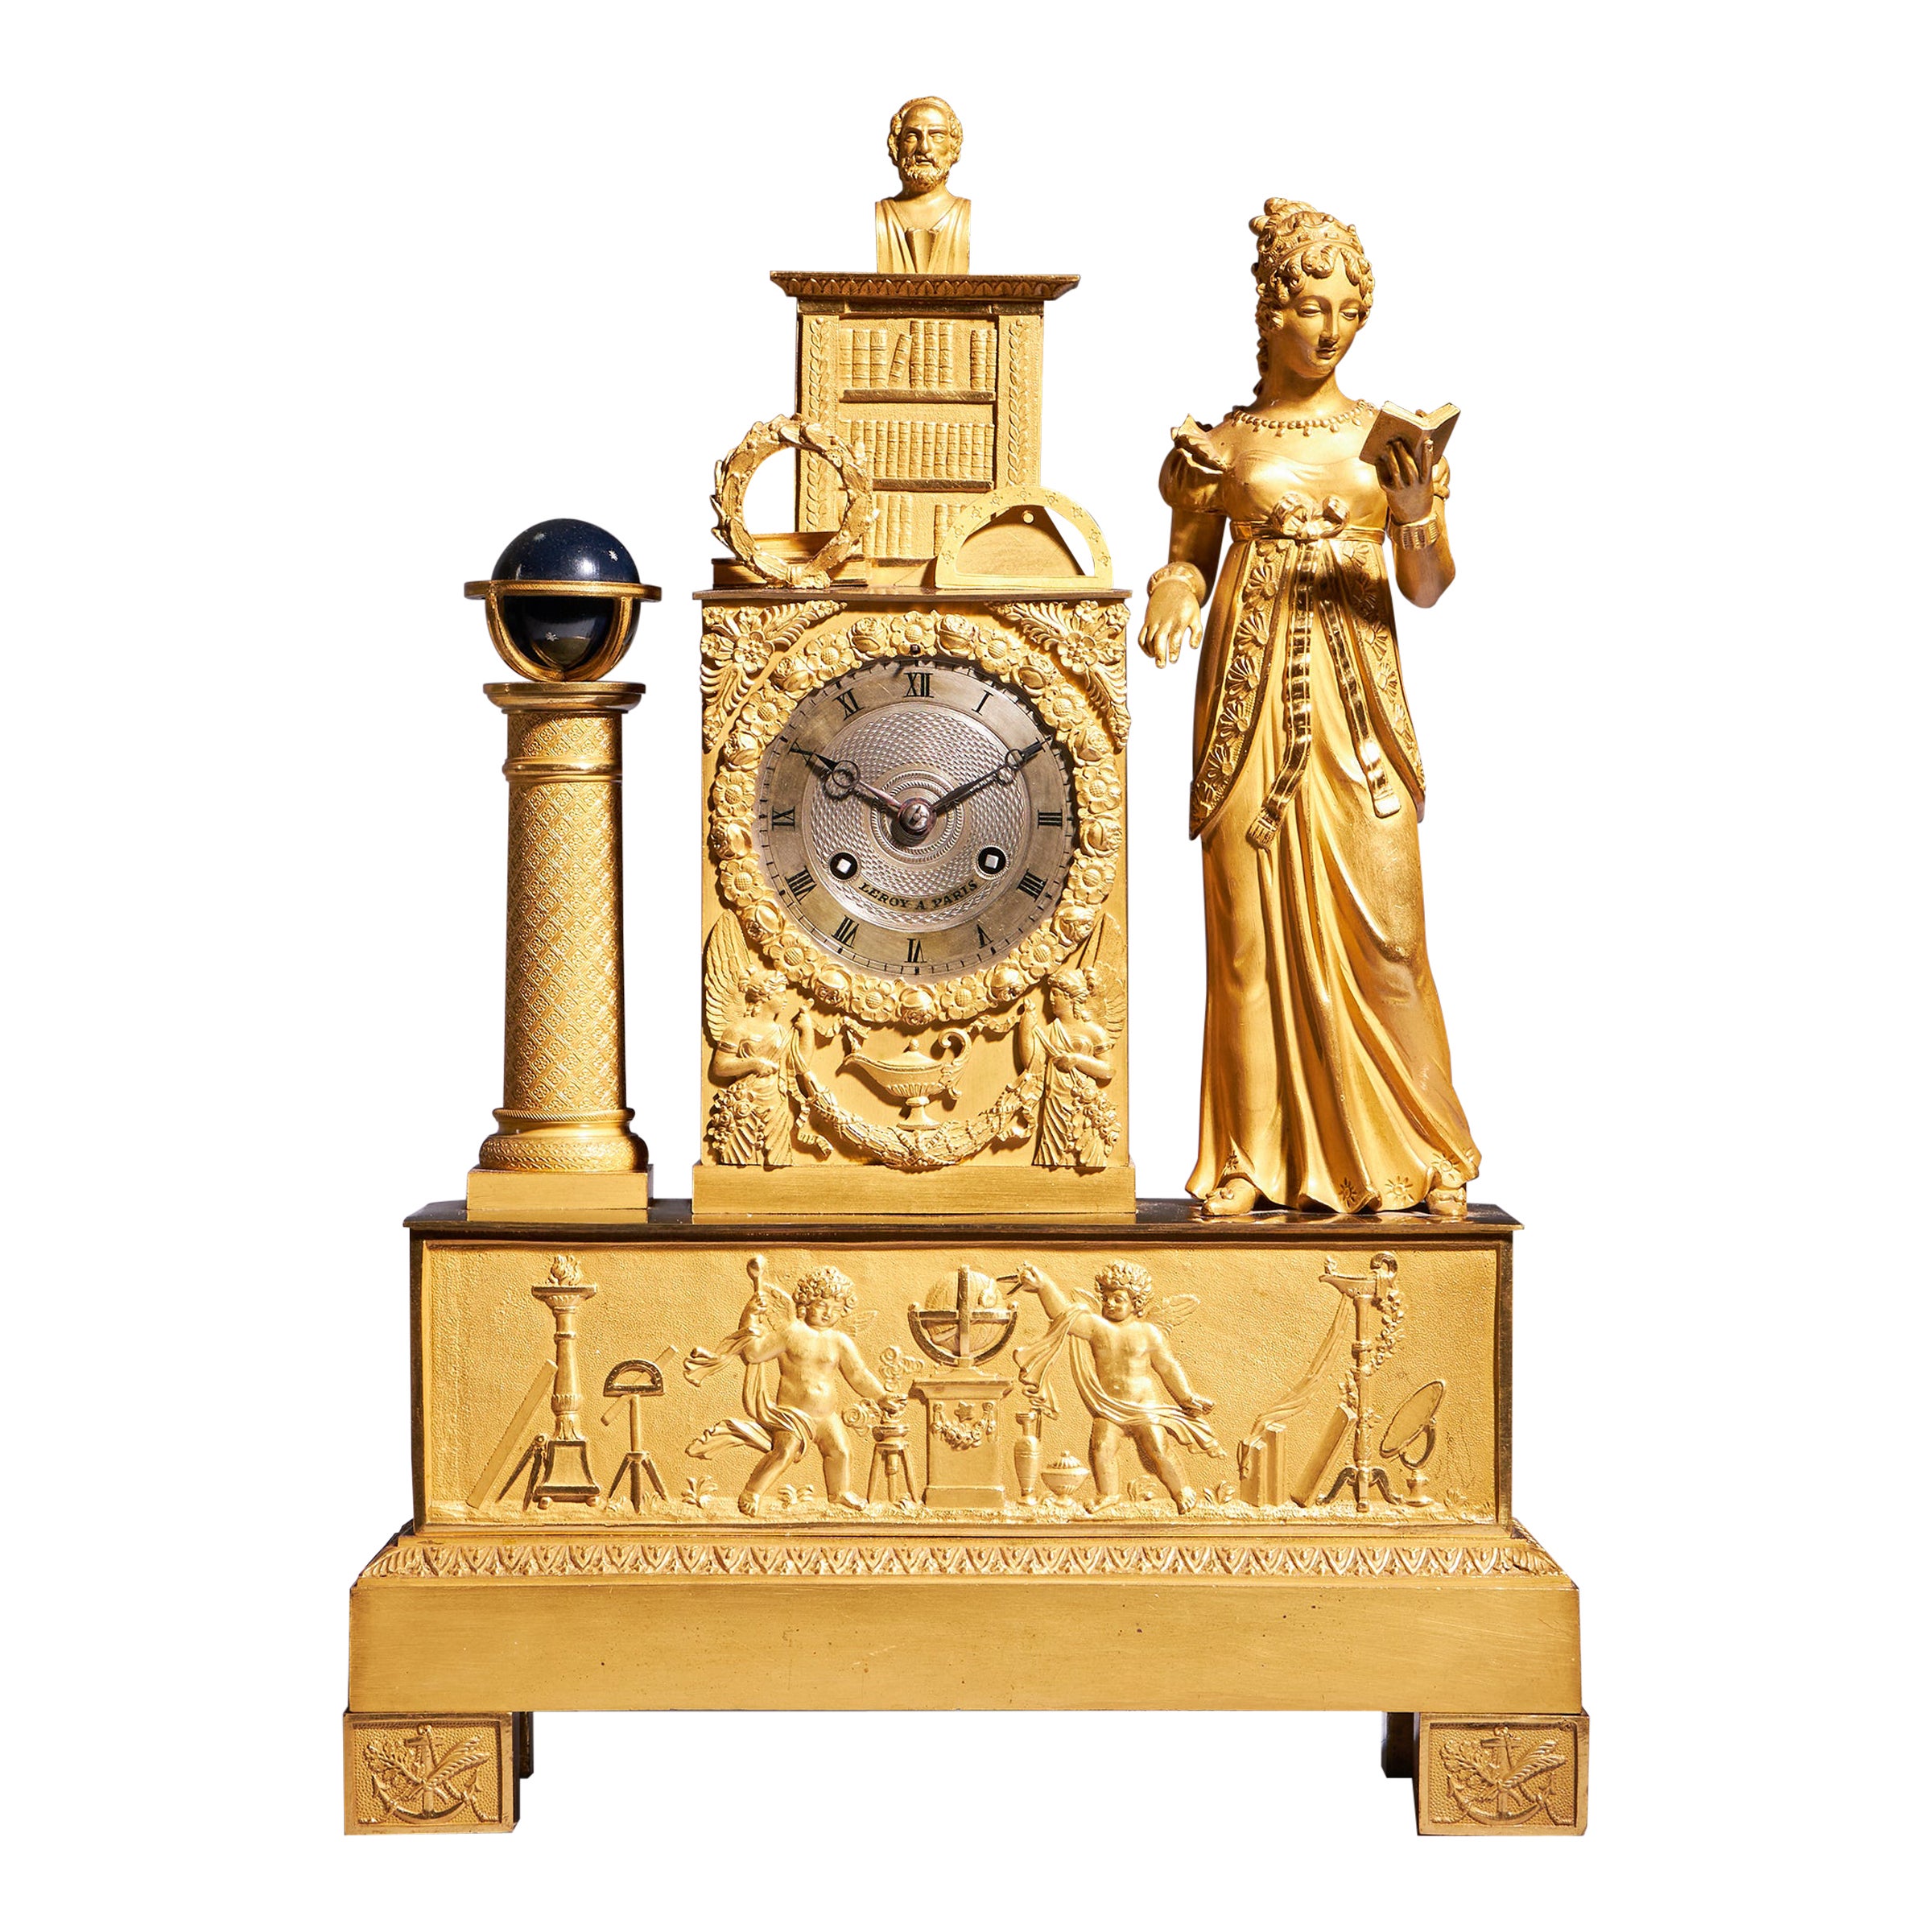 Französische Goldbronze-Kaminuhr des 19. Jahrhunderts (Pendule) von Leroy a Paris, um 1825